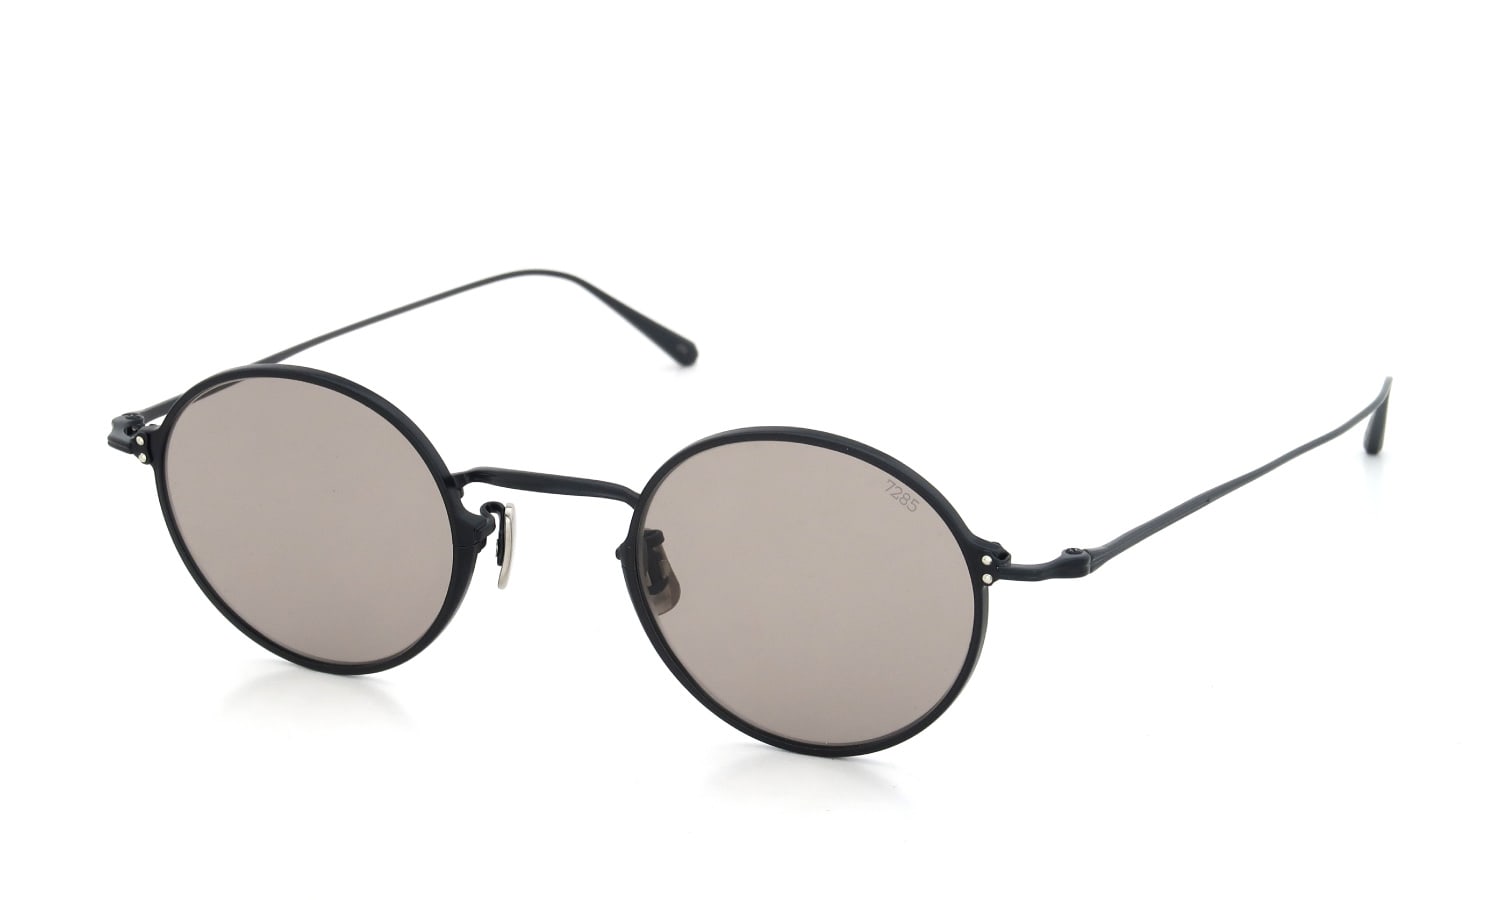 【即完モデル】EYEVAN 7285 Black Sunglasses (六角)メンズ